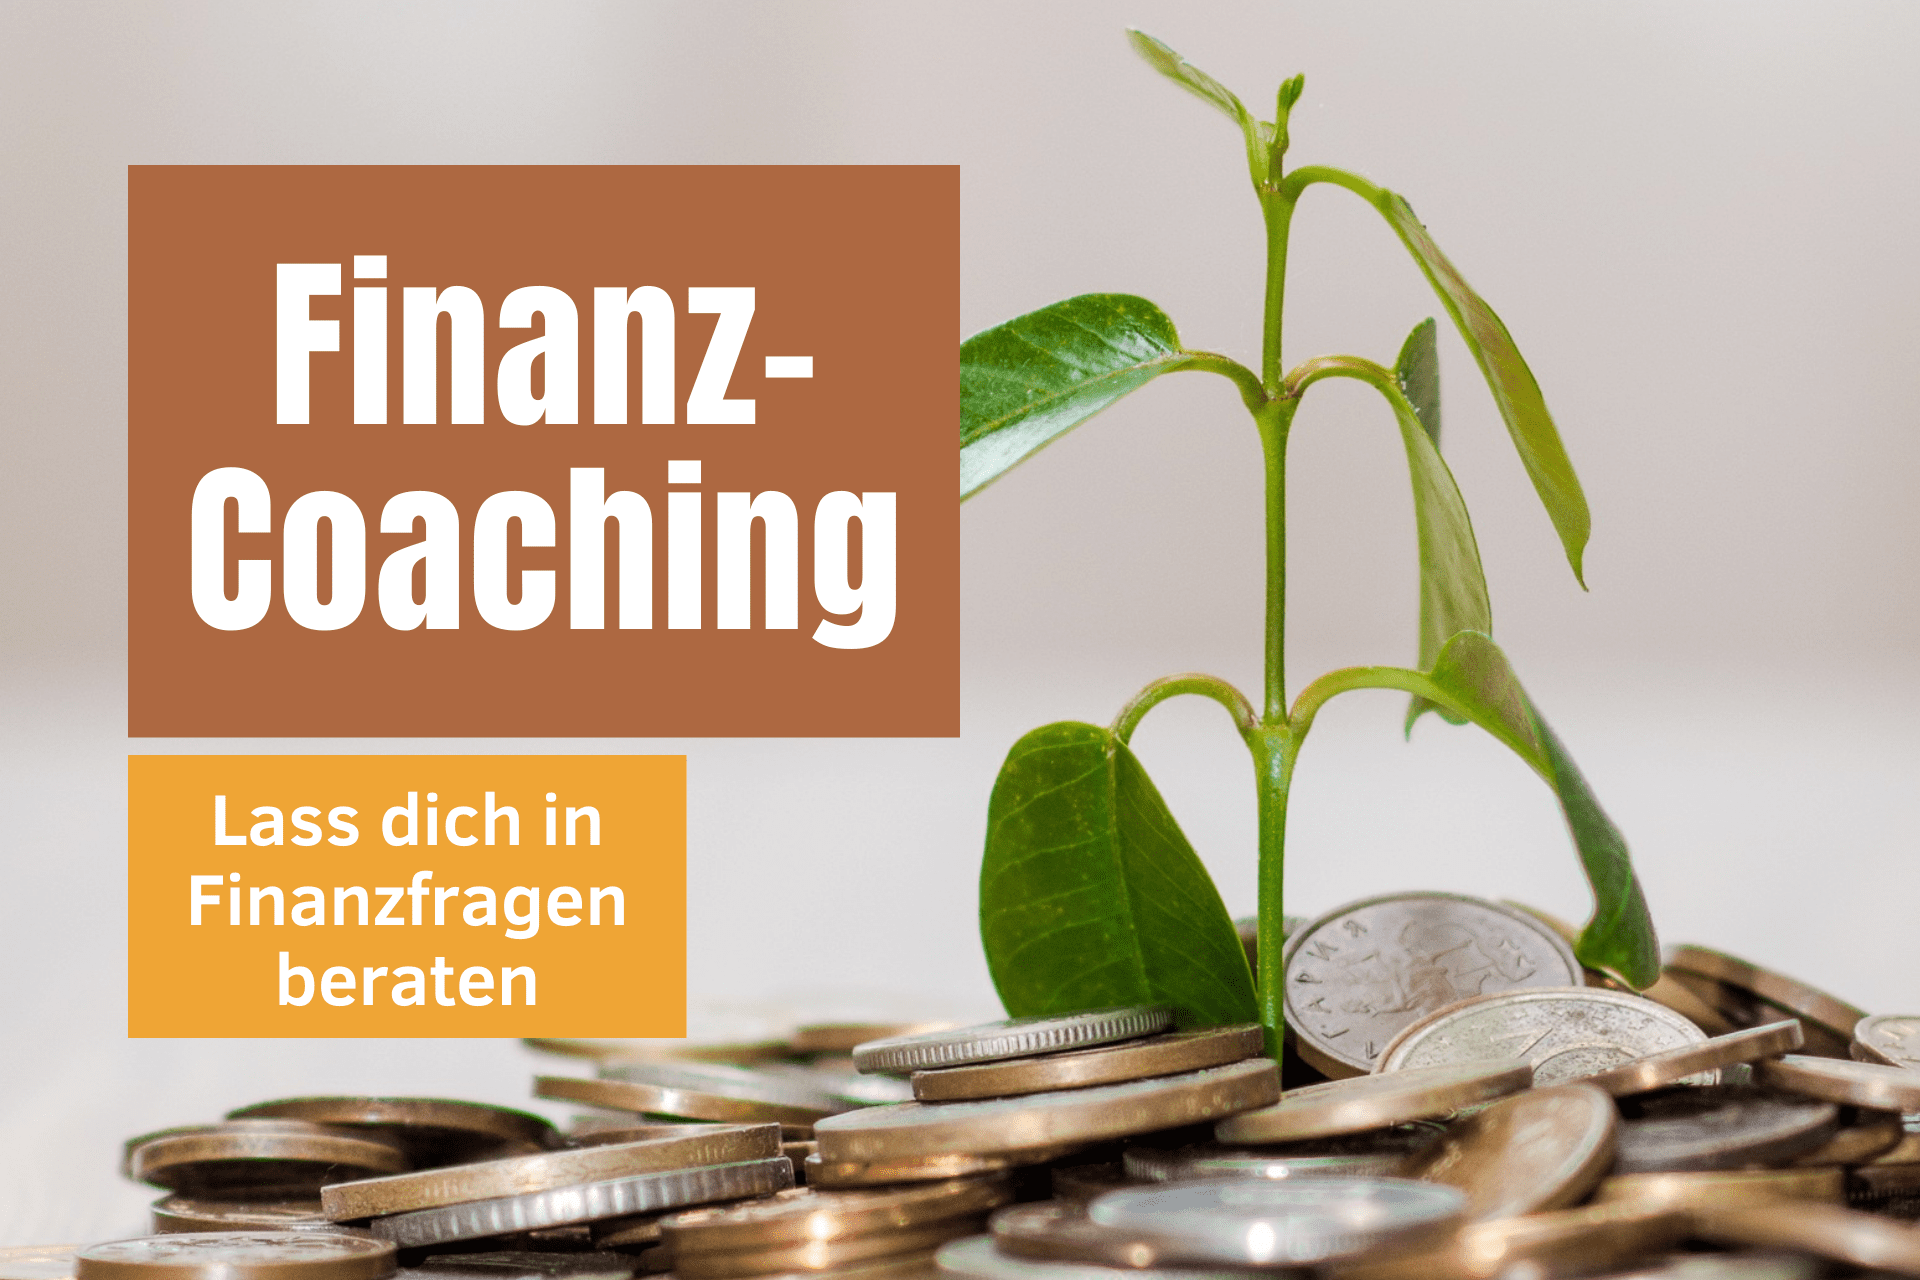 Finanz-Coaching